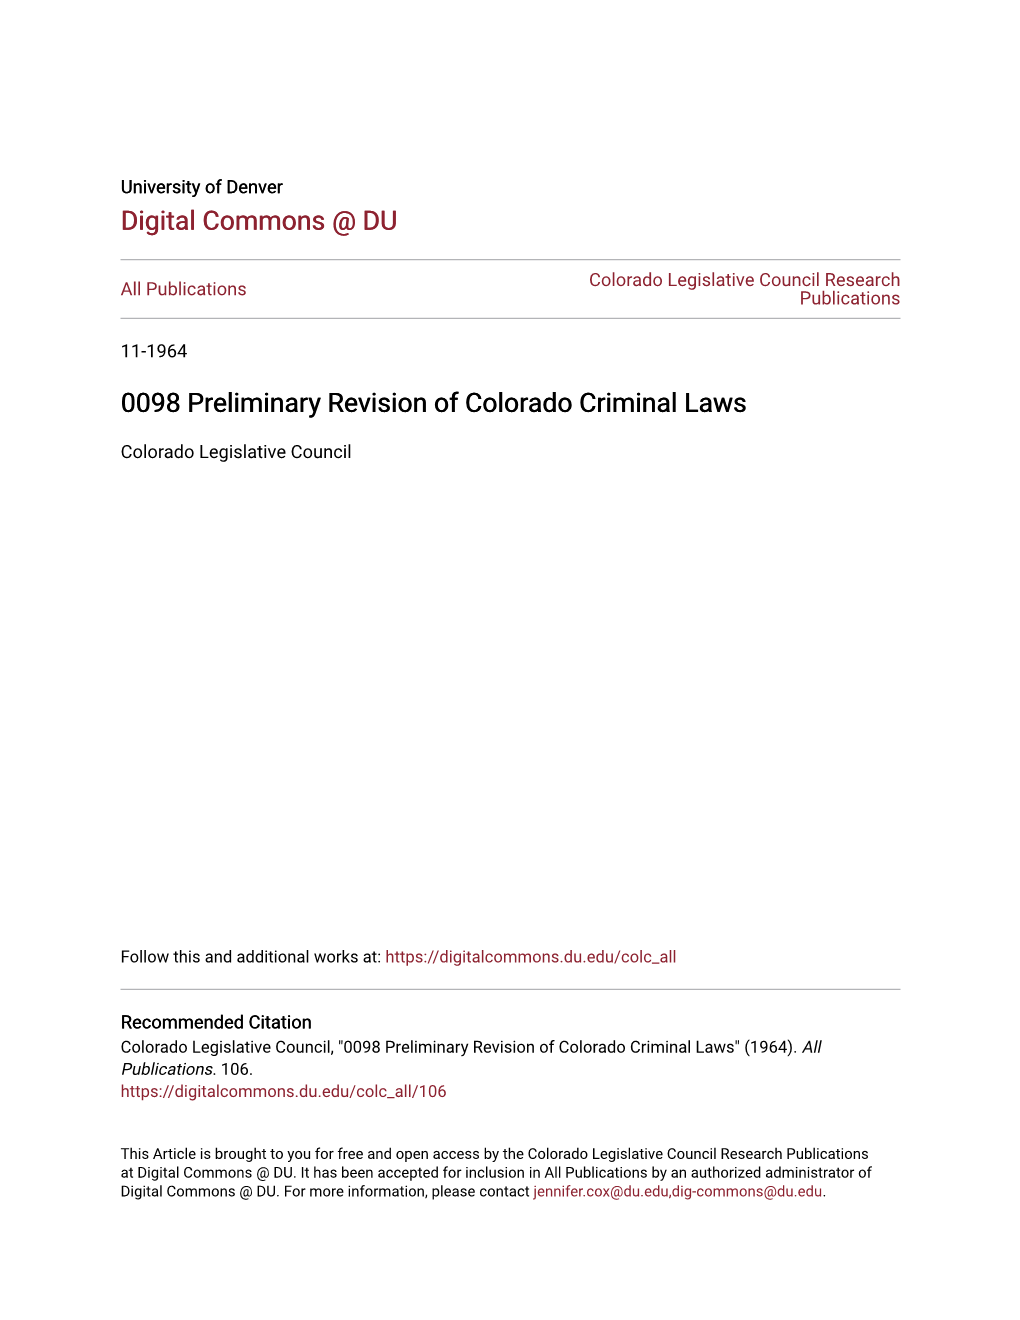 0098 Preliminary Revision of Colorado Criminal Laws